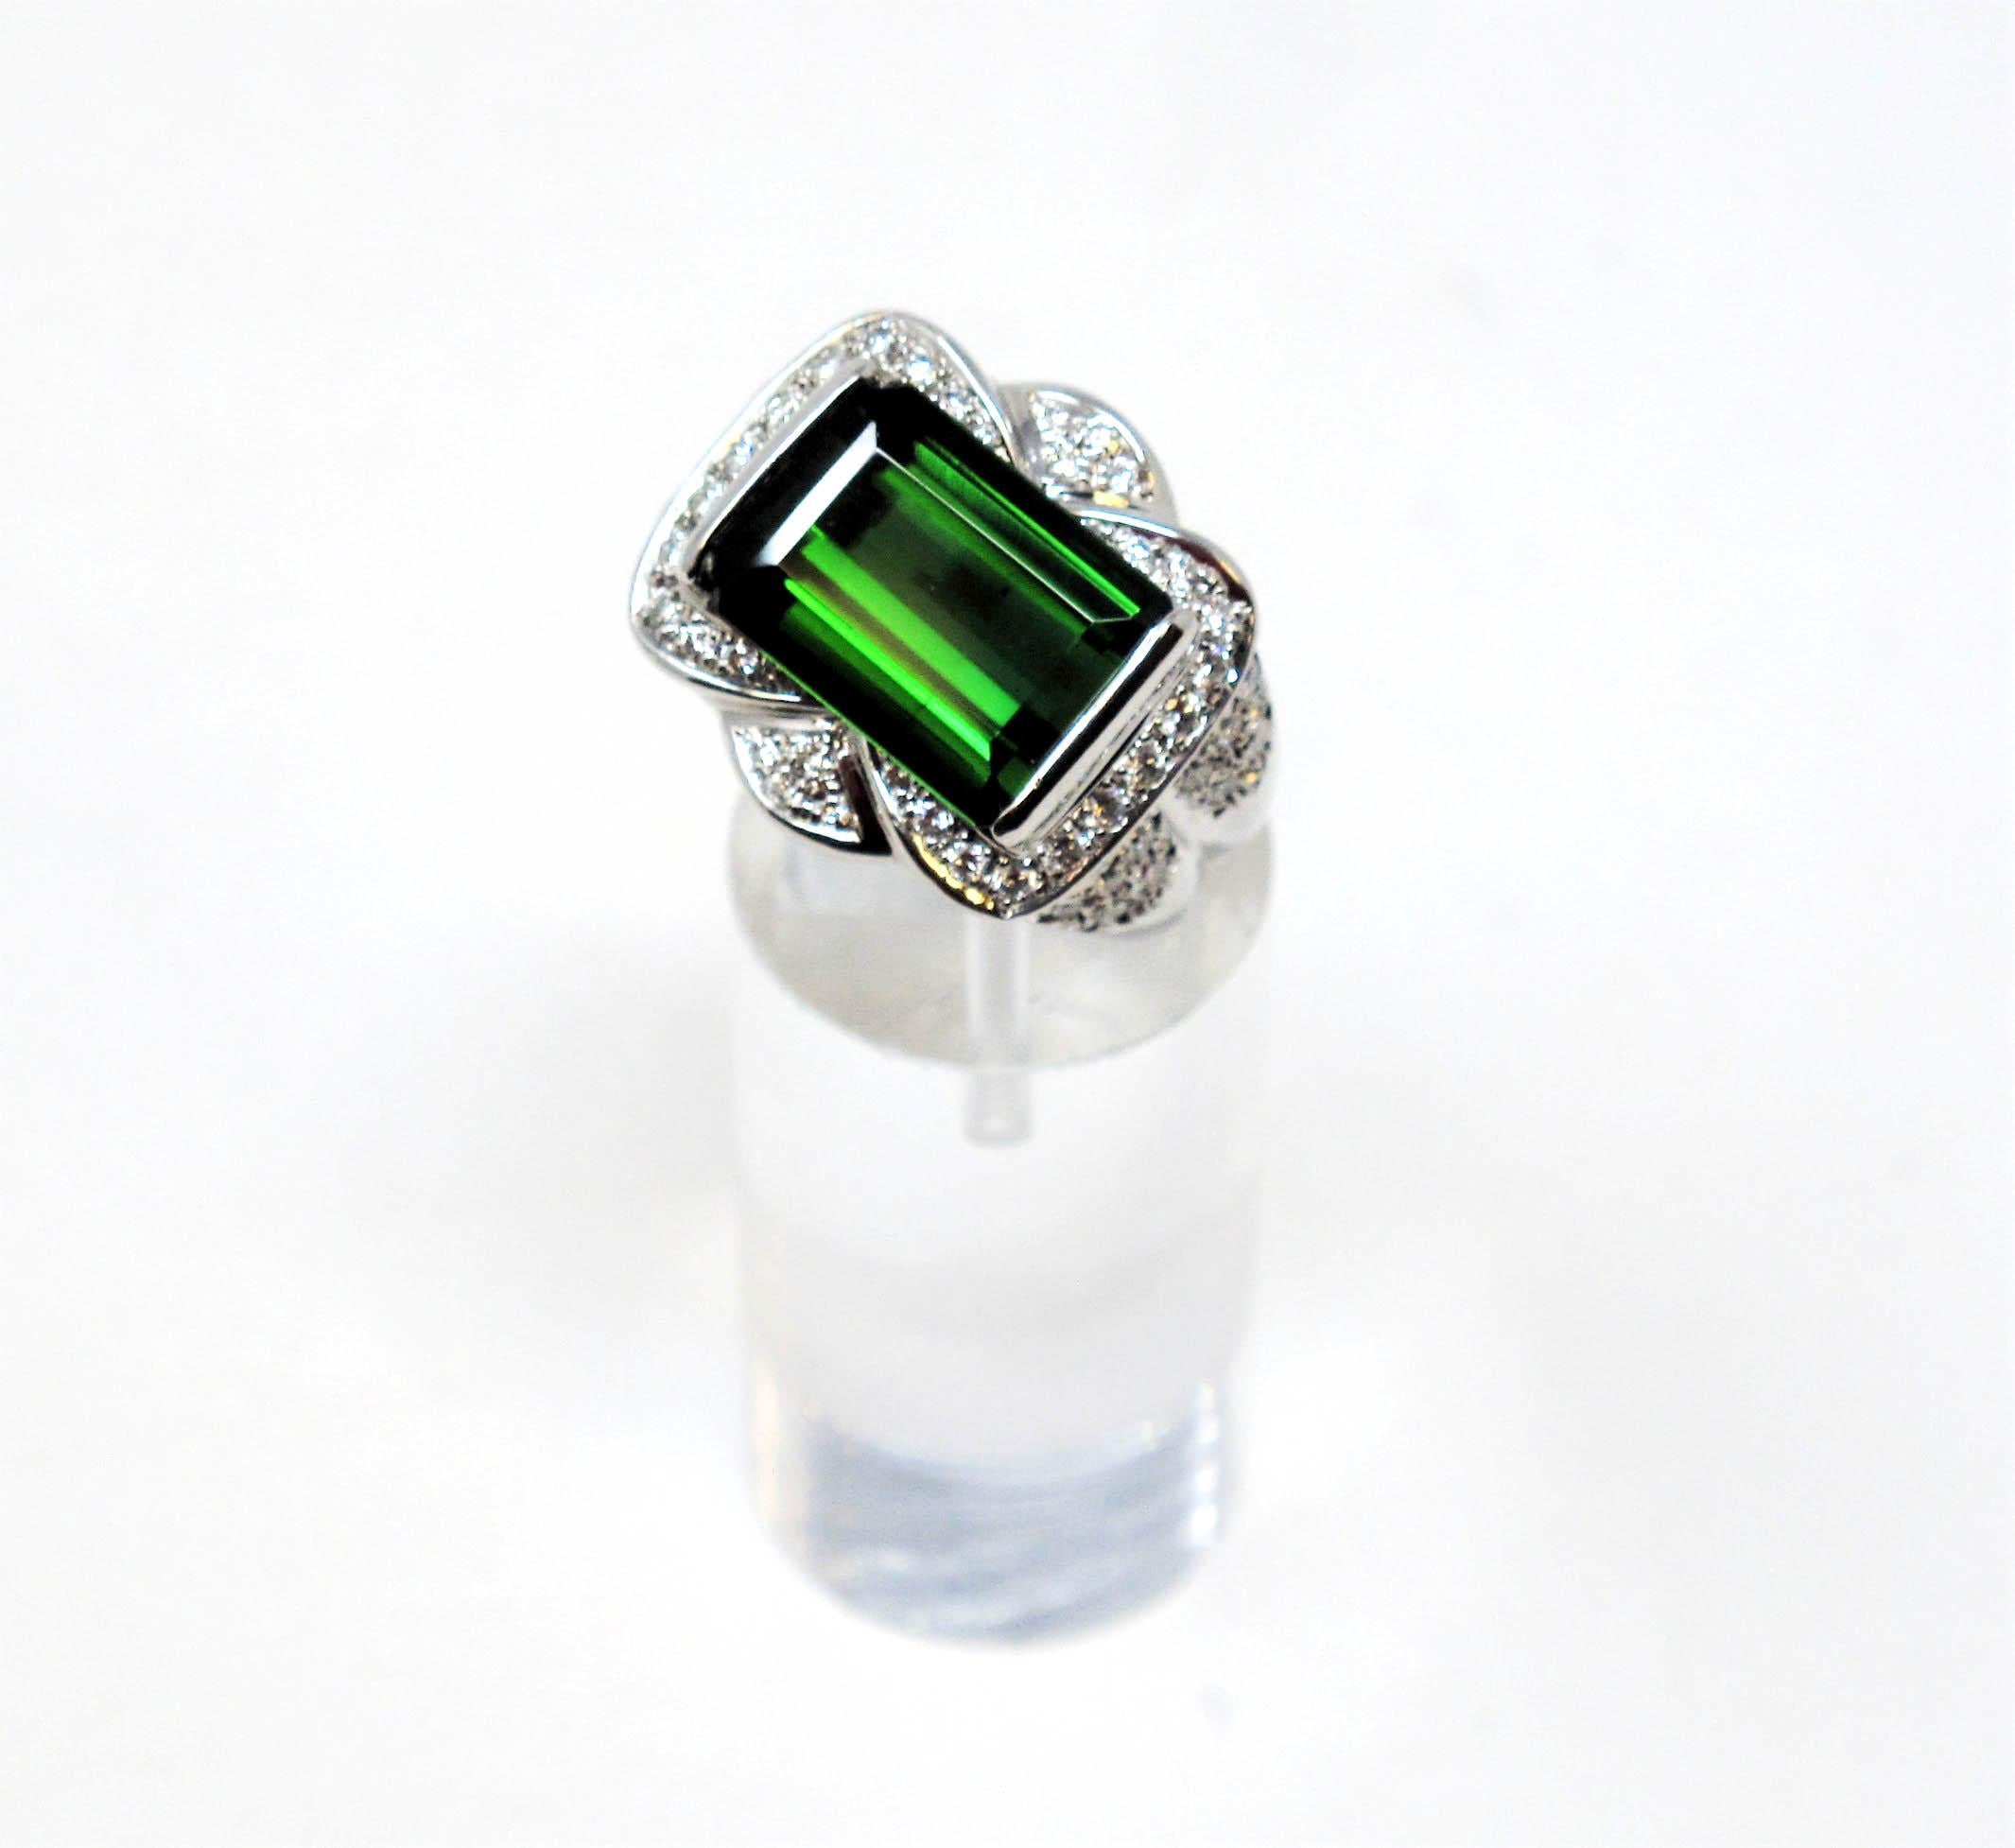 Ringgröße: 6

Kräftiger, schöner Cocktailring mit grünem Turmalin und Diamanten. Der leuchtend grüne Stein im Kontrast zu den strahlend weißen Diamanten fällt dem Betrachter sofort ins Auge. Er ist sowohl von der Größe als auch vom Glanz her